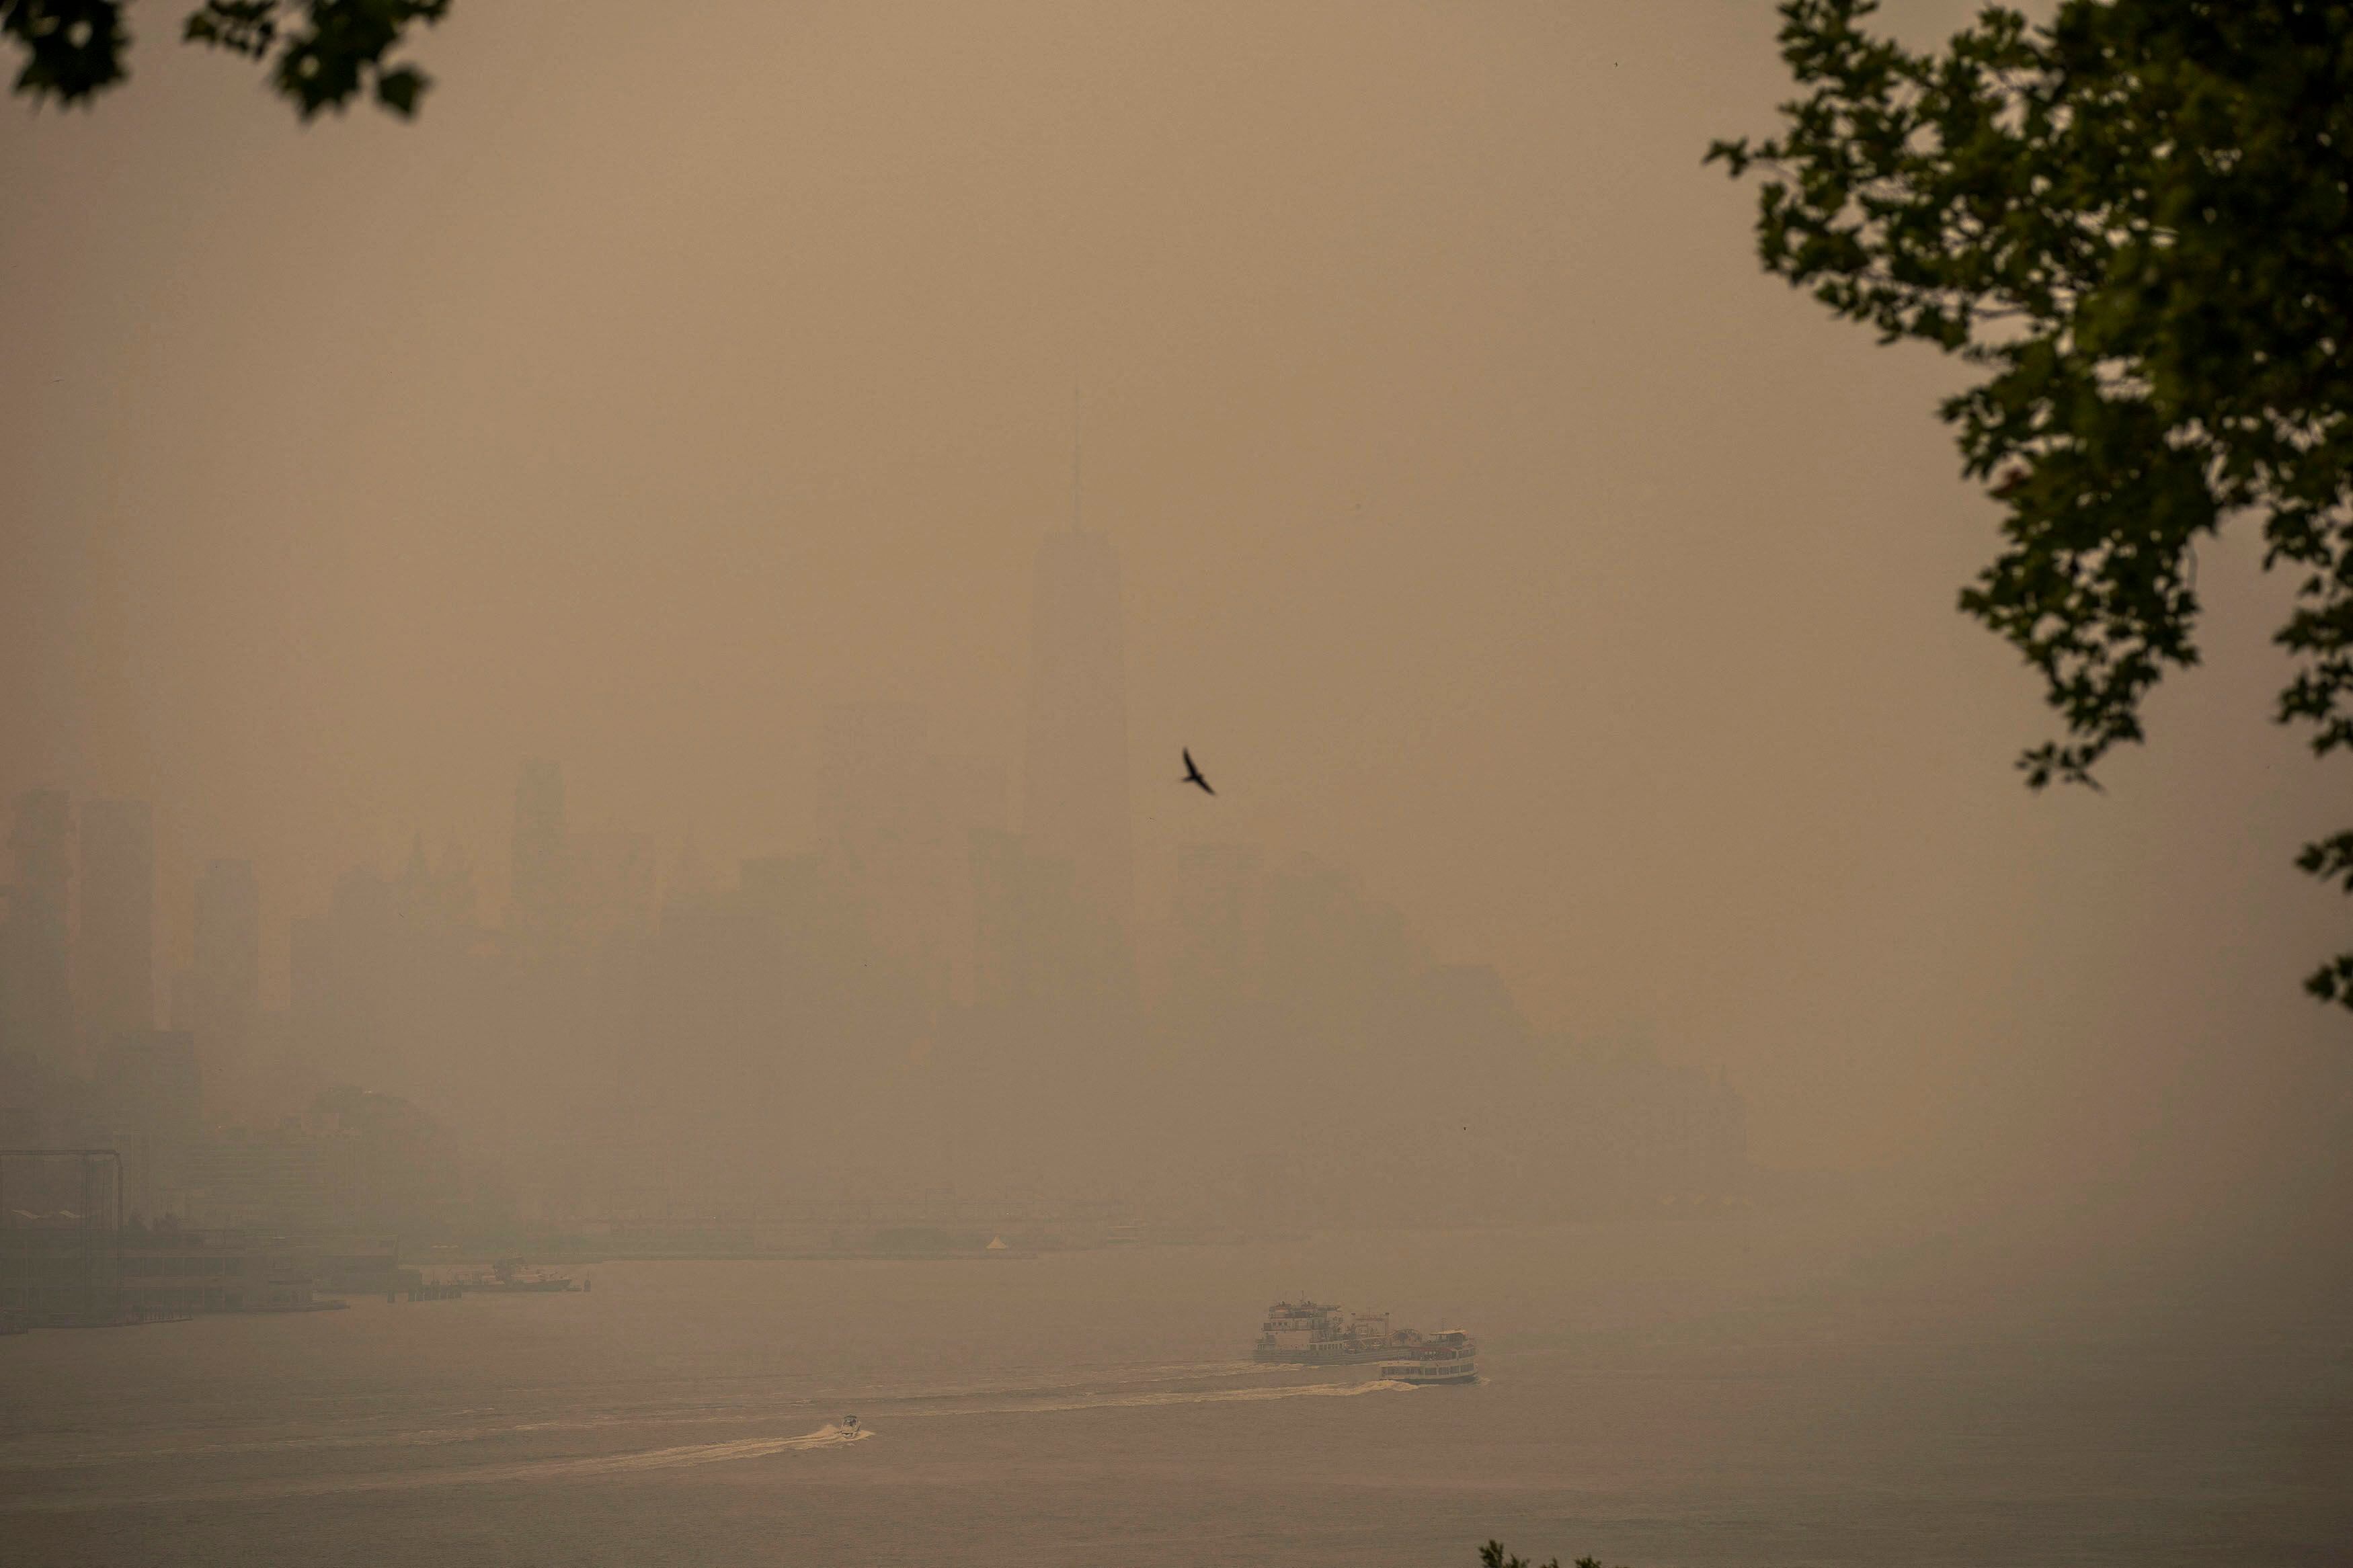 Un barco navega por el río Hudson mientras el horizonte de la ciudad de Nueva York está nublado, debido a los incendios forestales de Canadá, este miércoles. La contaminación por el humo ha empezado a provocar retrasos y cancelaciones de algunos vuelos, aunque el tráfico aéreo no se ha visto gravemente afectado de momento.